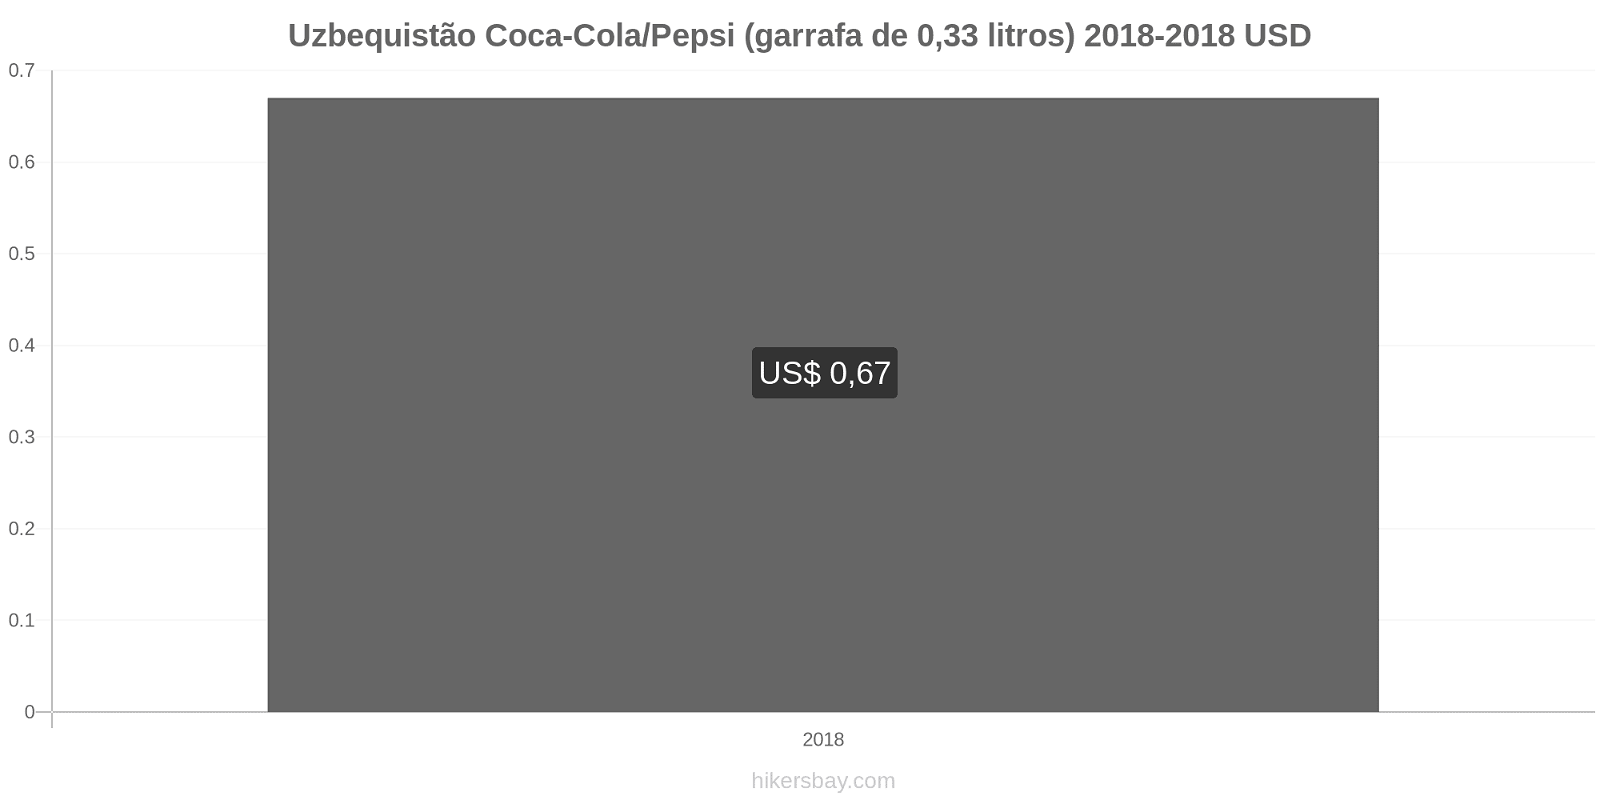 Uzbequistão mudanças de preços Coca-Cola/Pepsi (garrafa de 0.33 litros) hikersbay.com